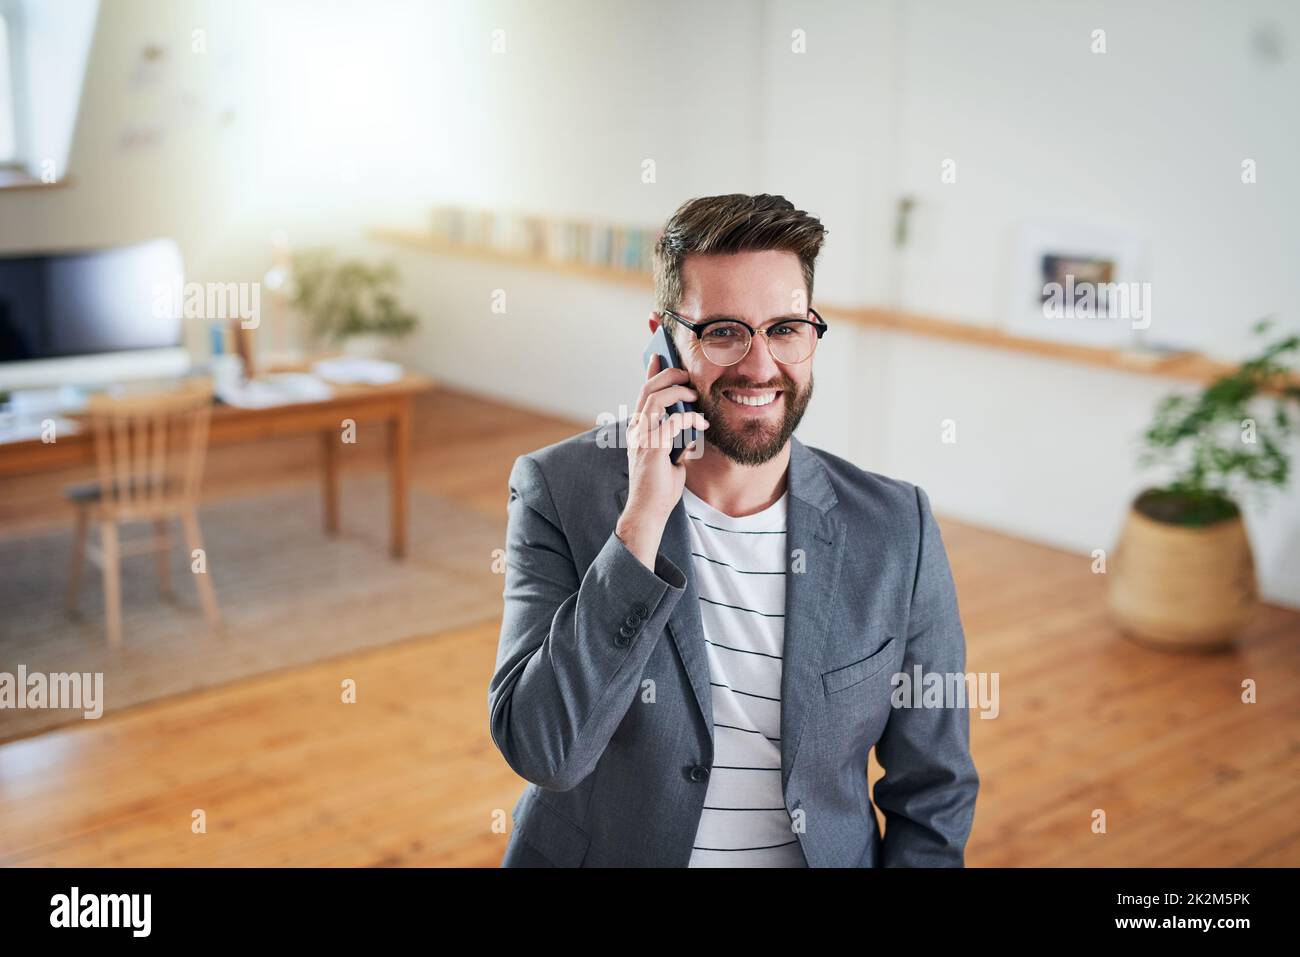 Erfolg beginnt mit Kommunikation. High-Angle-Aufnahme eines hübschen jungen Geschäftsmannes, der auf seinem Handy spricht, während er in seinem Heimbüro steht. Stockfoto